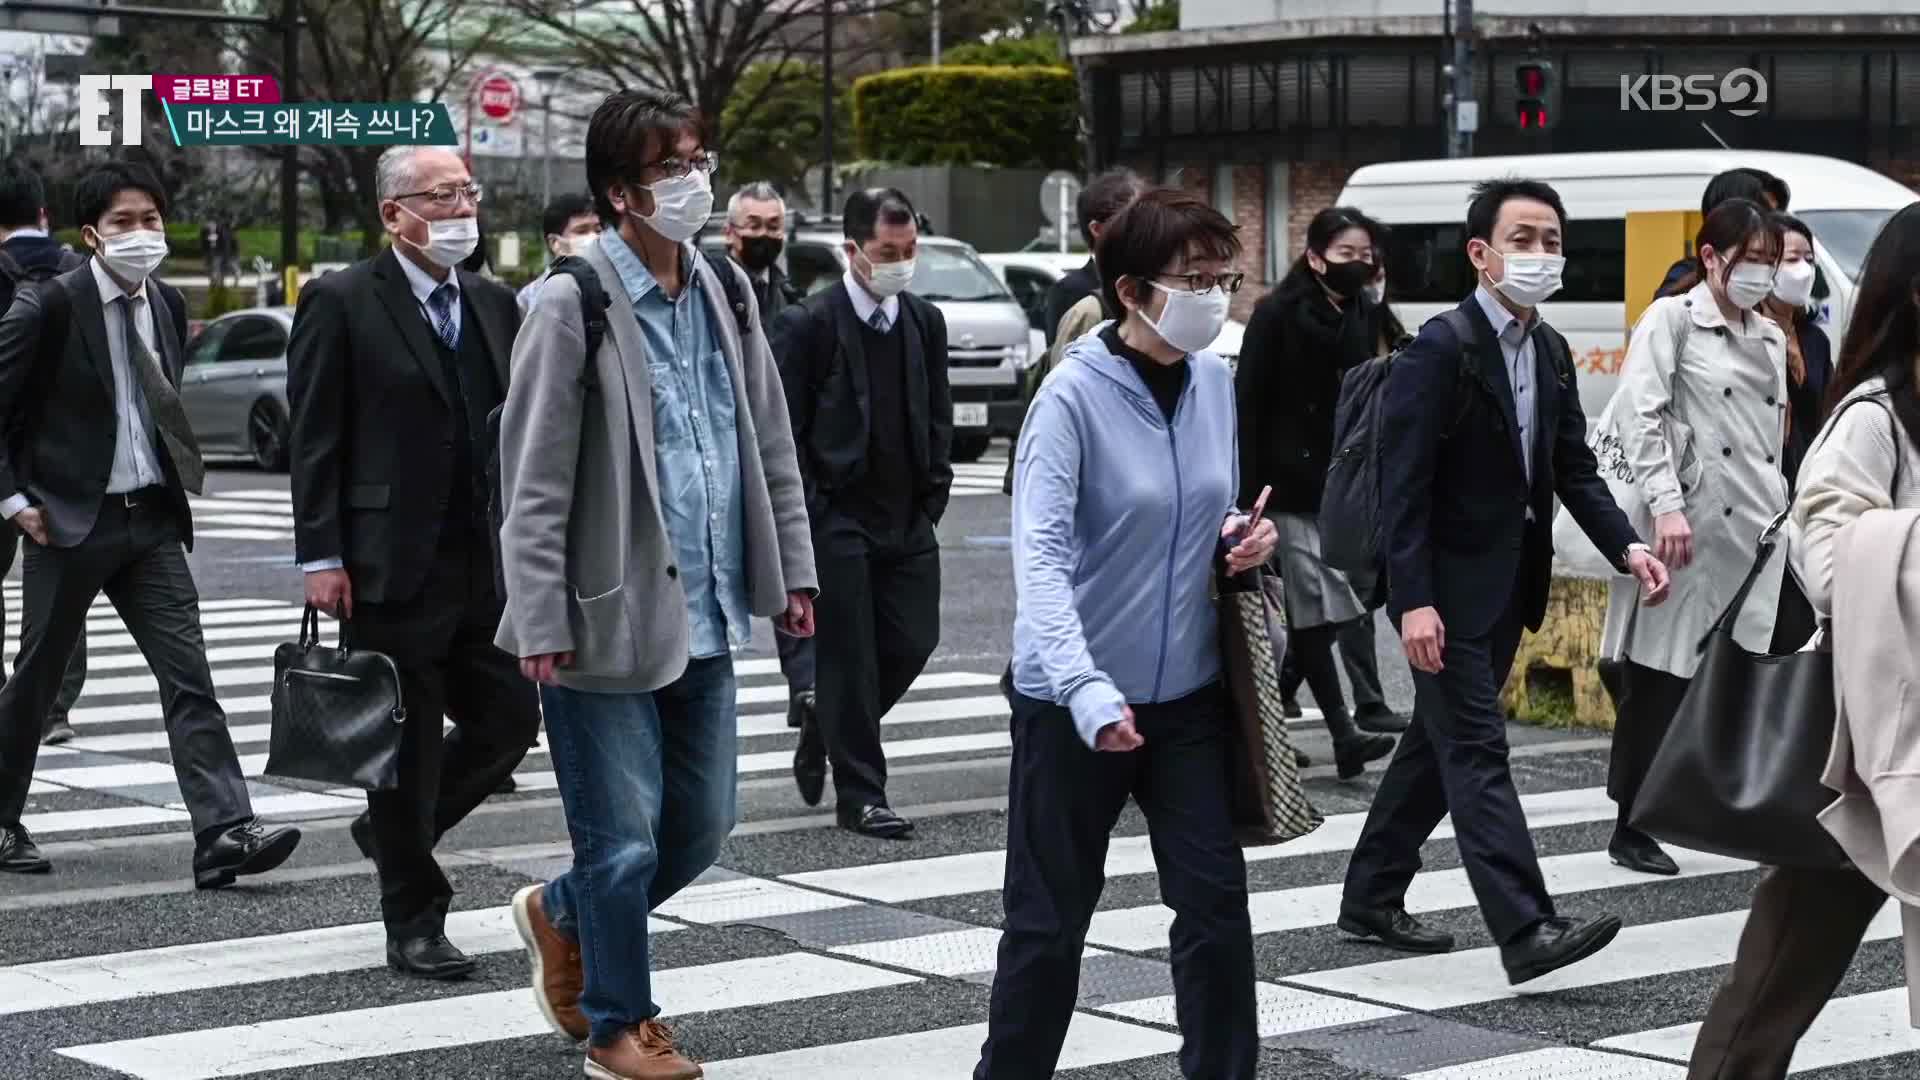 [ET] “오늘도 씁니다”…한국·일본만 마스크 안 벗는 사연